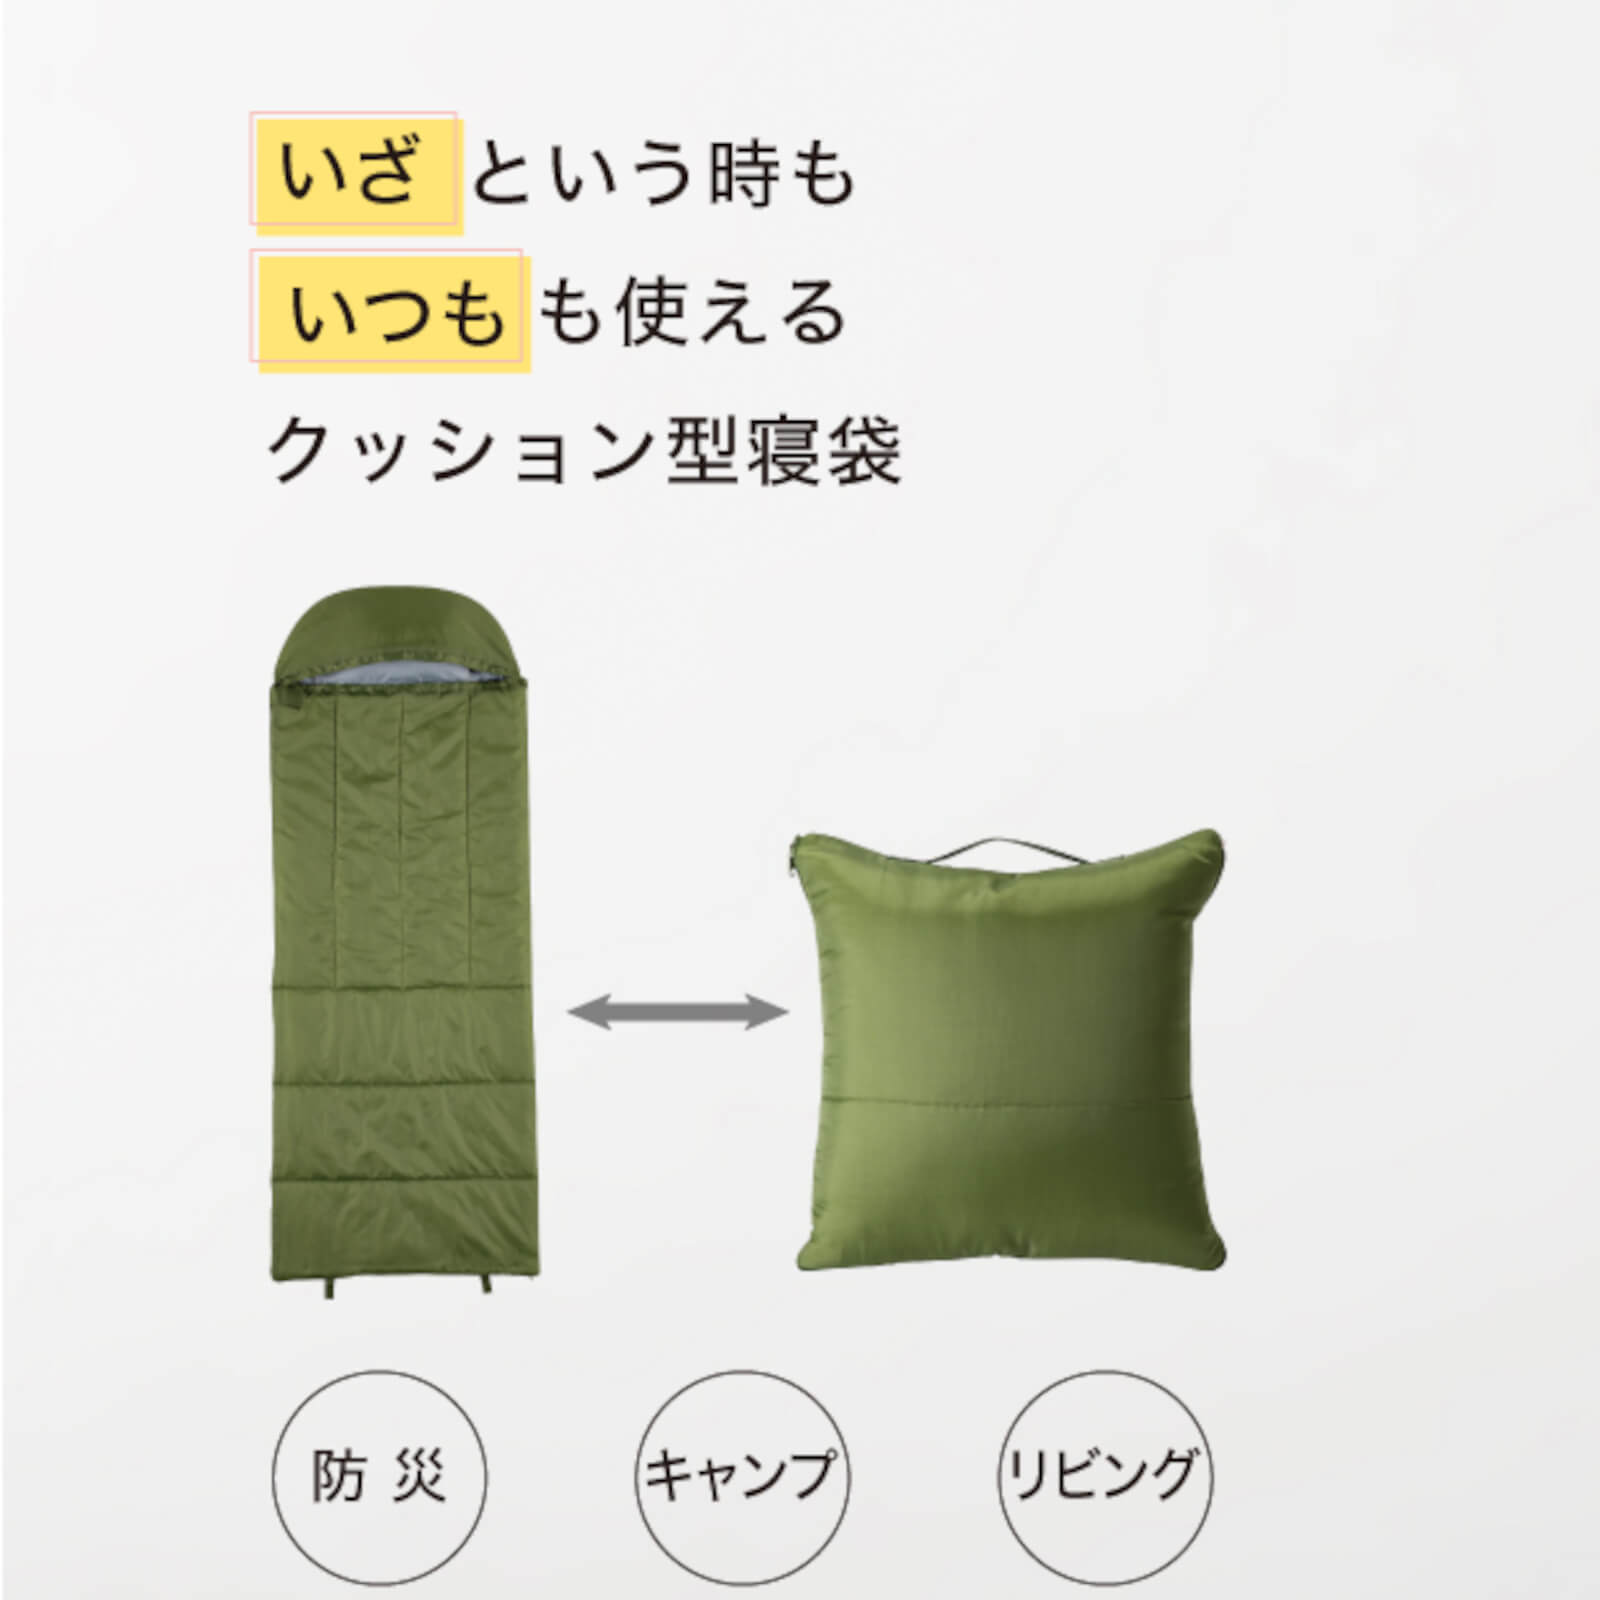 プロイデア SONAENO クッション型多機能寝袋 | 朝日新聞モール